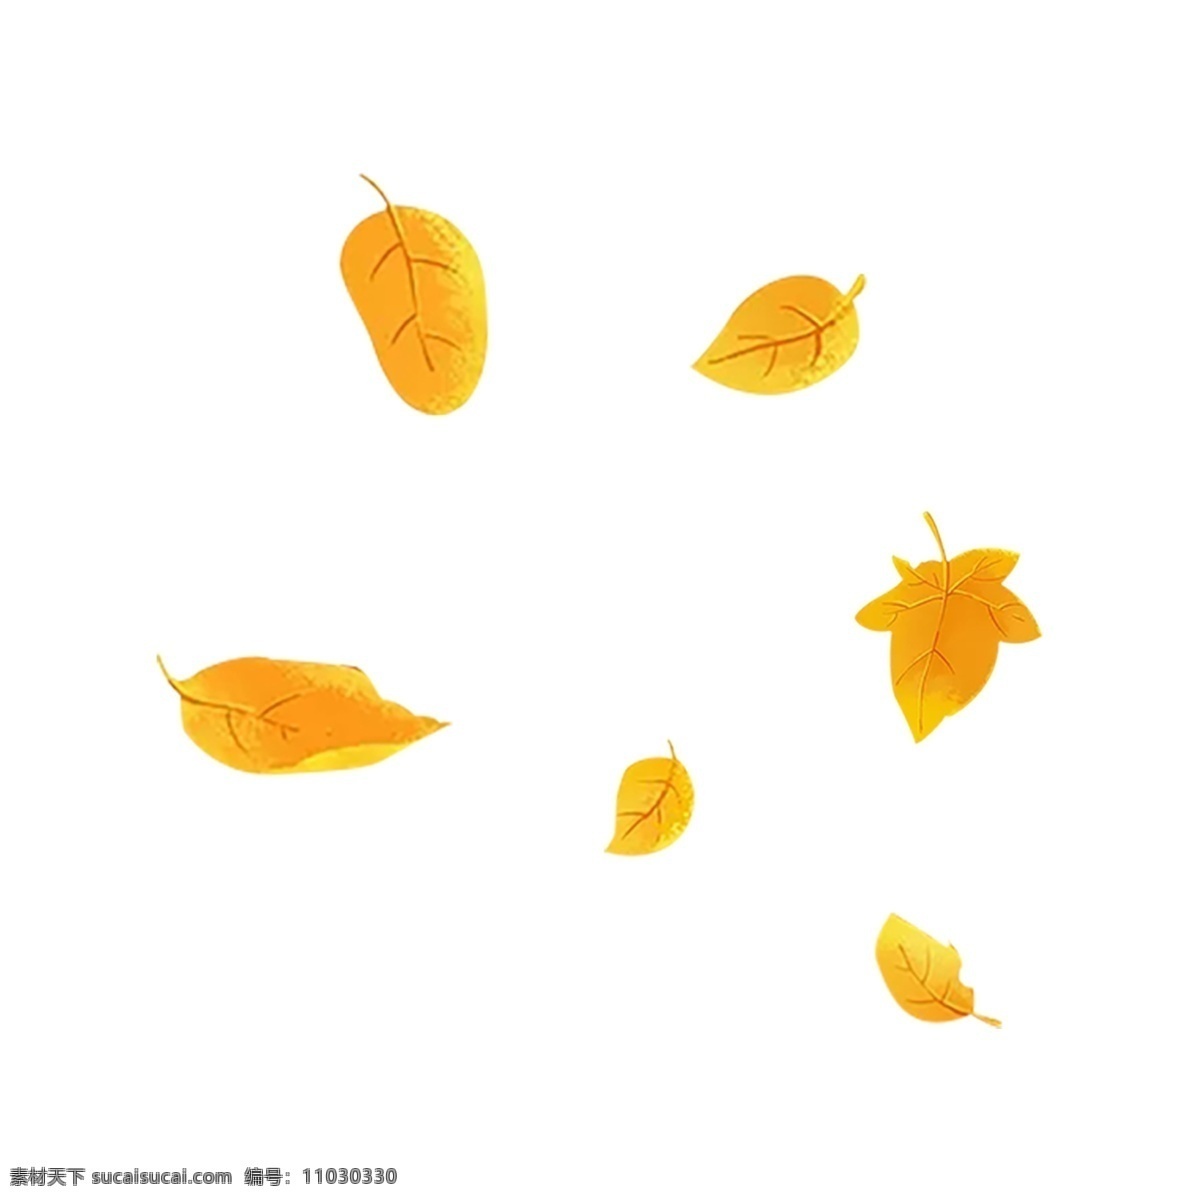 唯美 秋季 枫叶 透明 装饰 叶子 png元素 装饰图案 免扣素材 透明素材